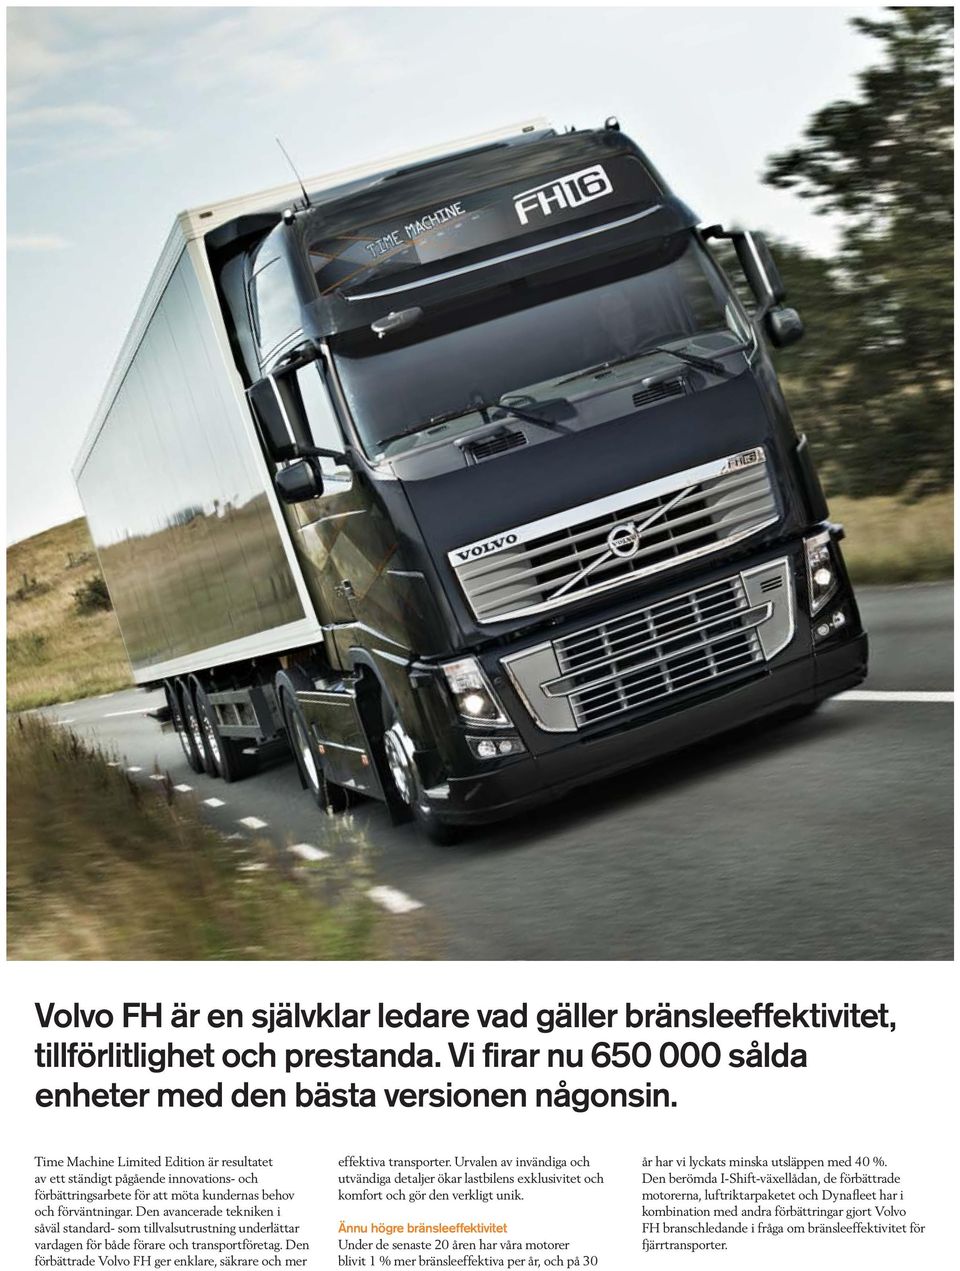 Den avancerade tekniken i såväl standard- som tillvalsutrustning underlättar vardagen för både förare och transportföretag. Den förbättrade Volvo FH ger enklare, säkrare och mer effektiva transporter.